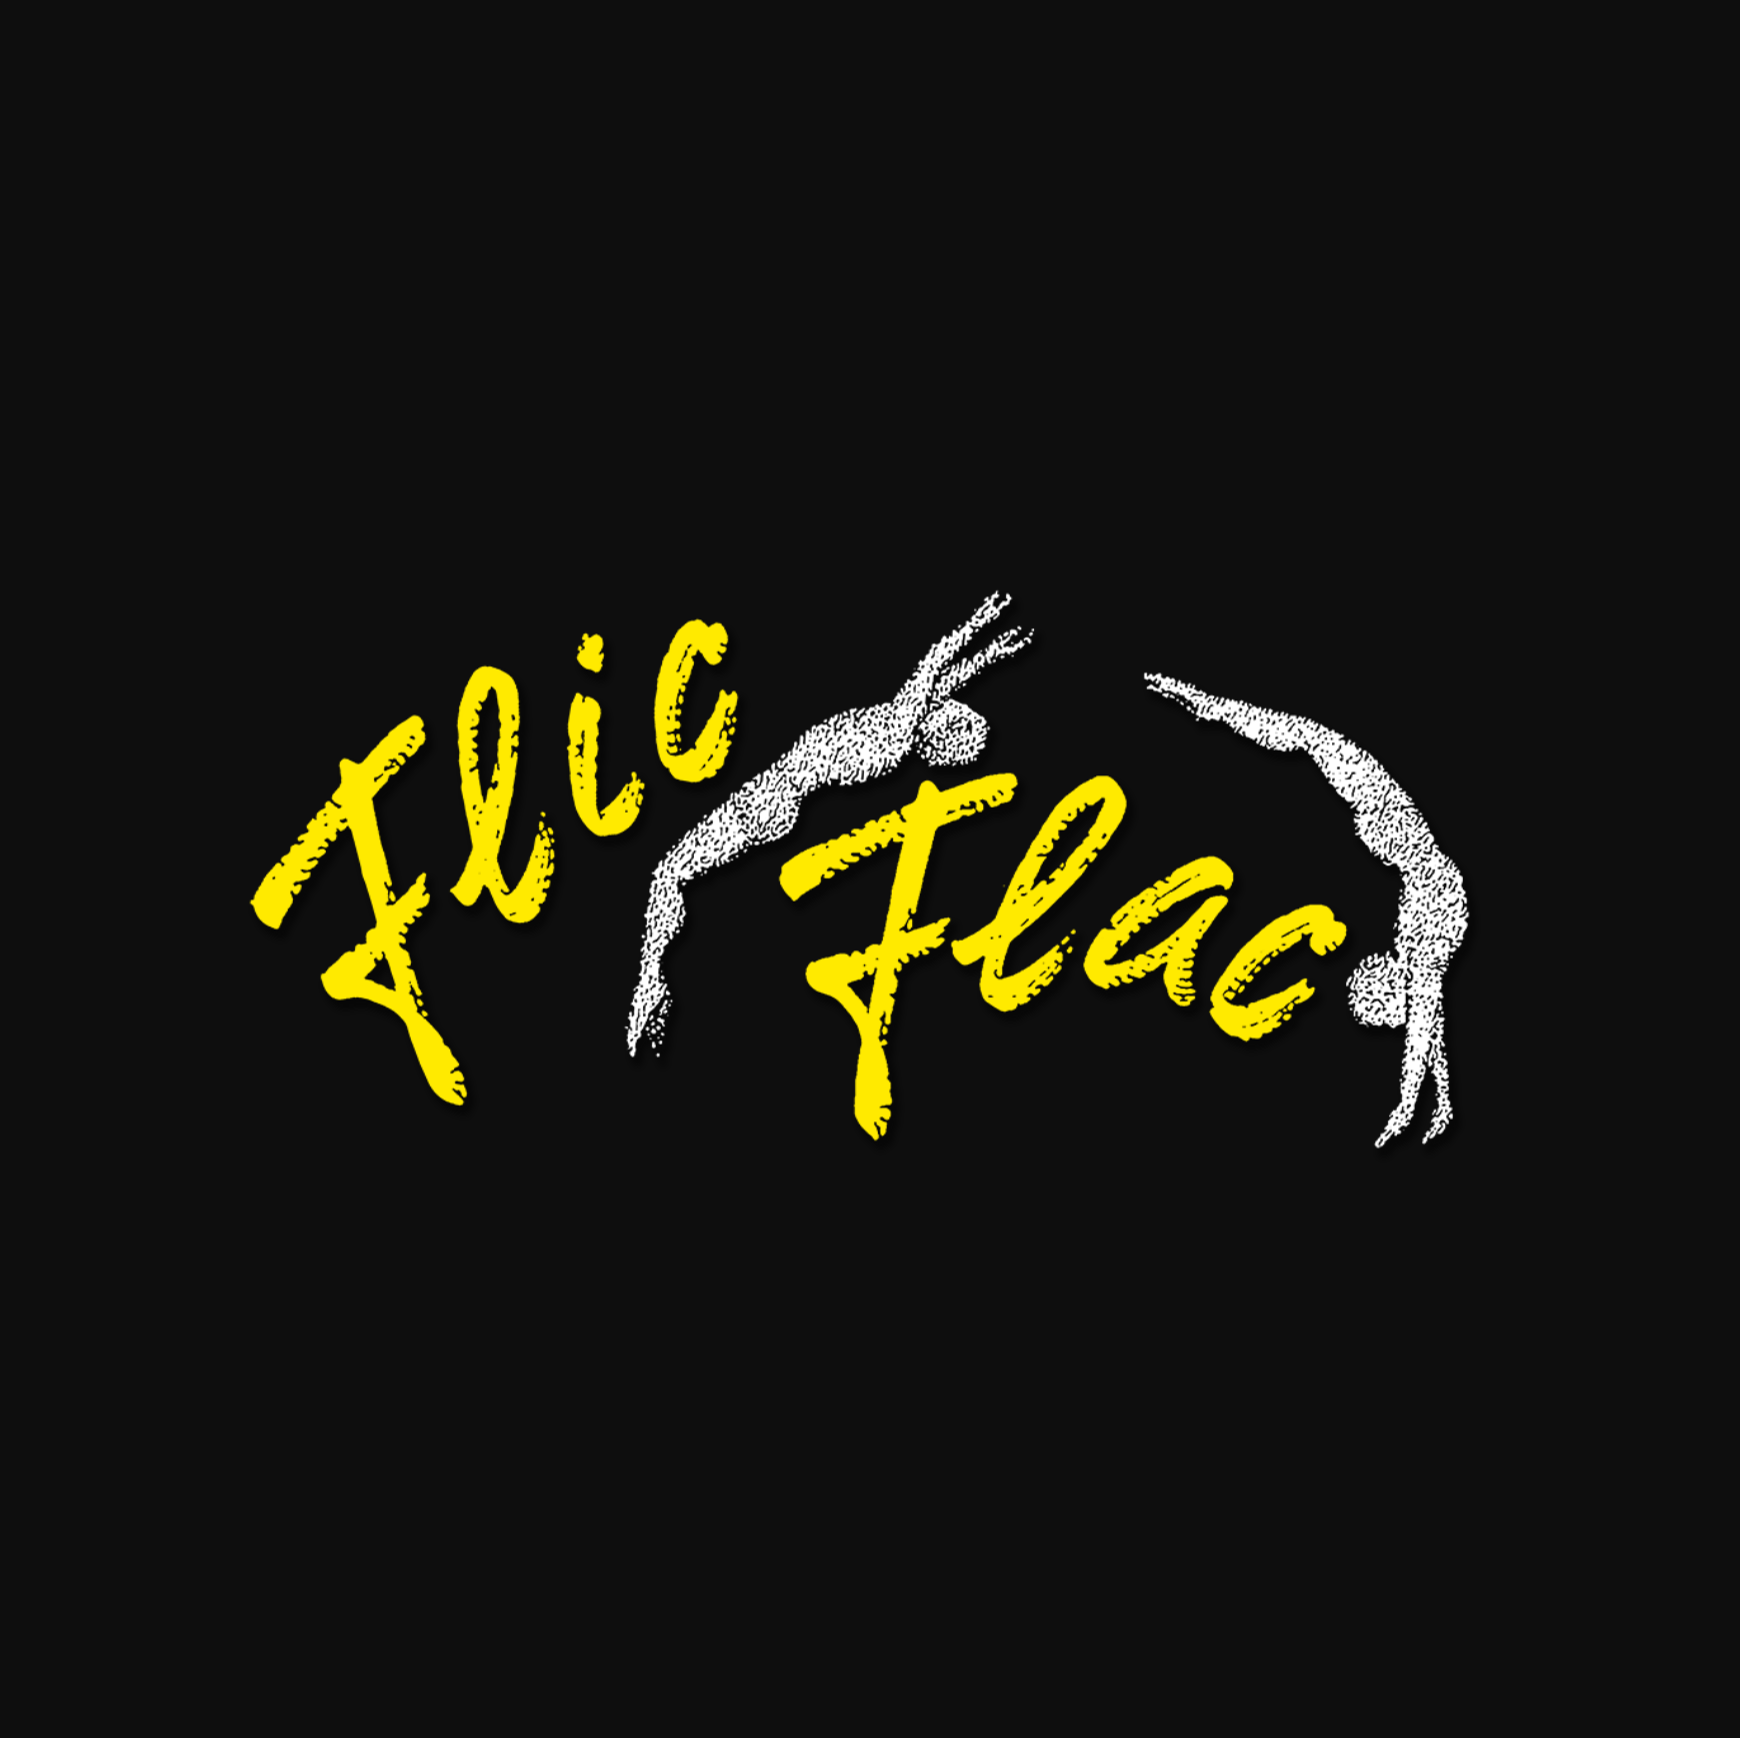 Flic Flac